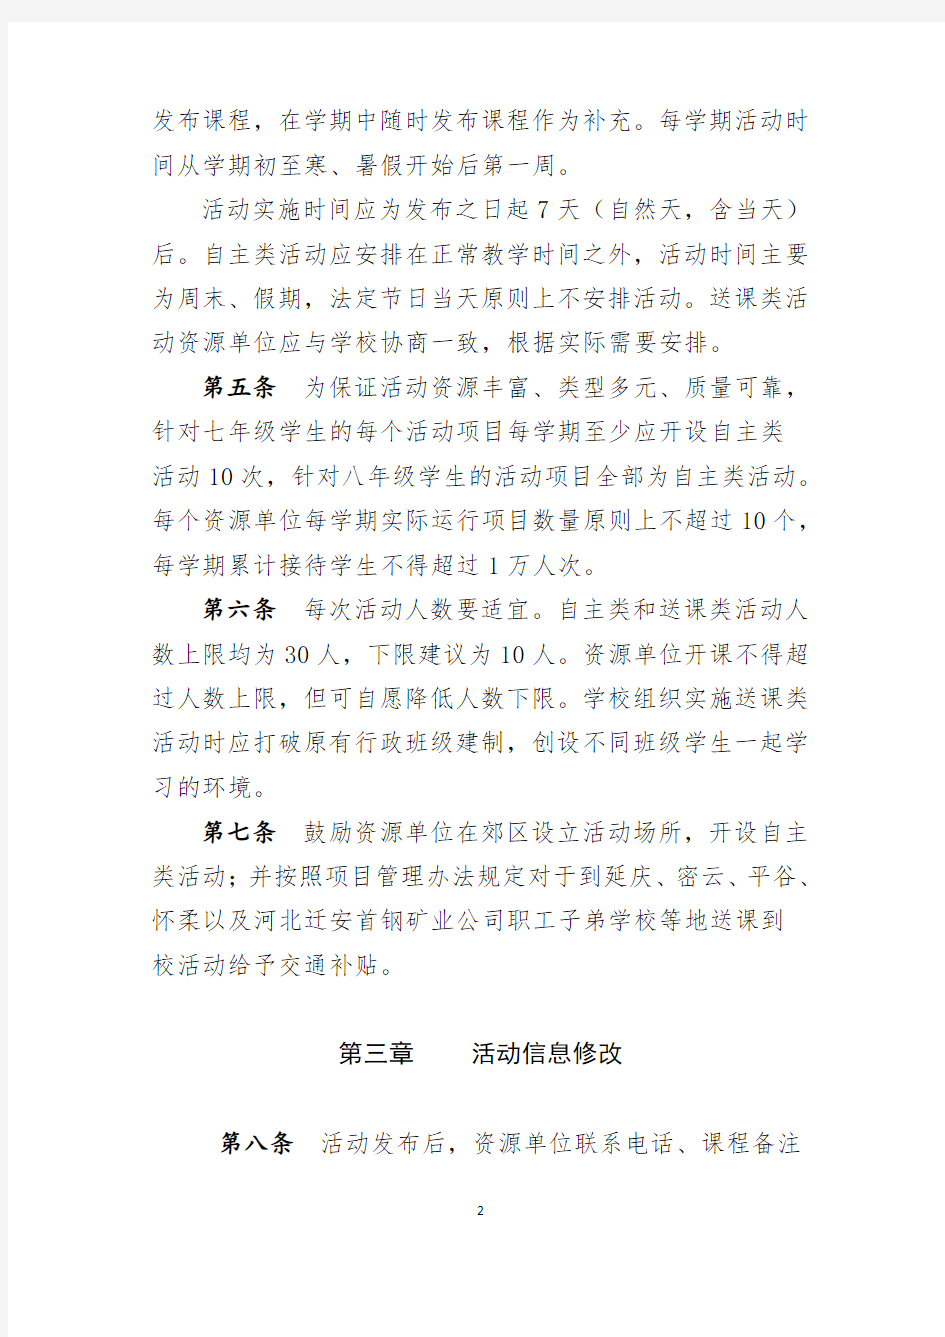 北京市初中开放性科学实践活动管理操作流程